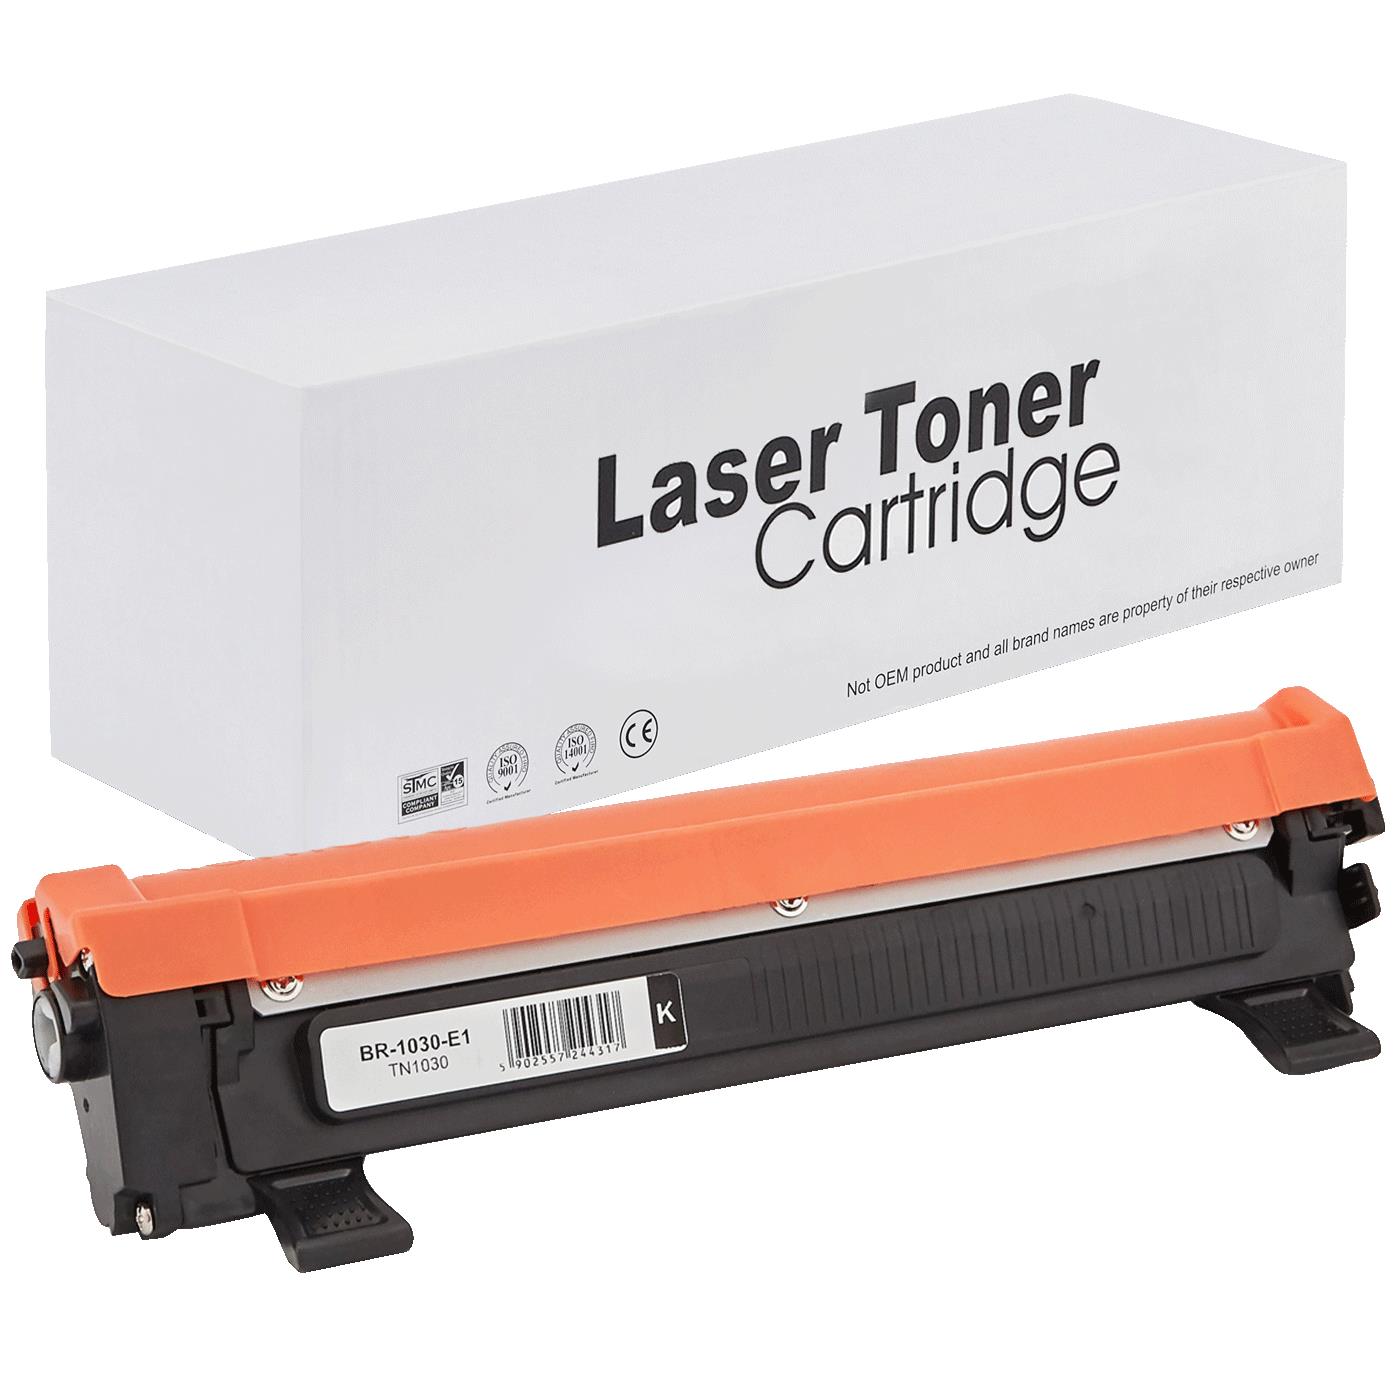 съвместима тонер касета за принтери и печатащи устройства на Brother 1610 Toner BR-1030 | TN1030 / TN1050 / TN-1030. Ниски цени, прецизно изпълнение, високо качество.